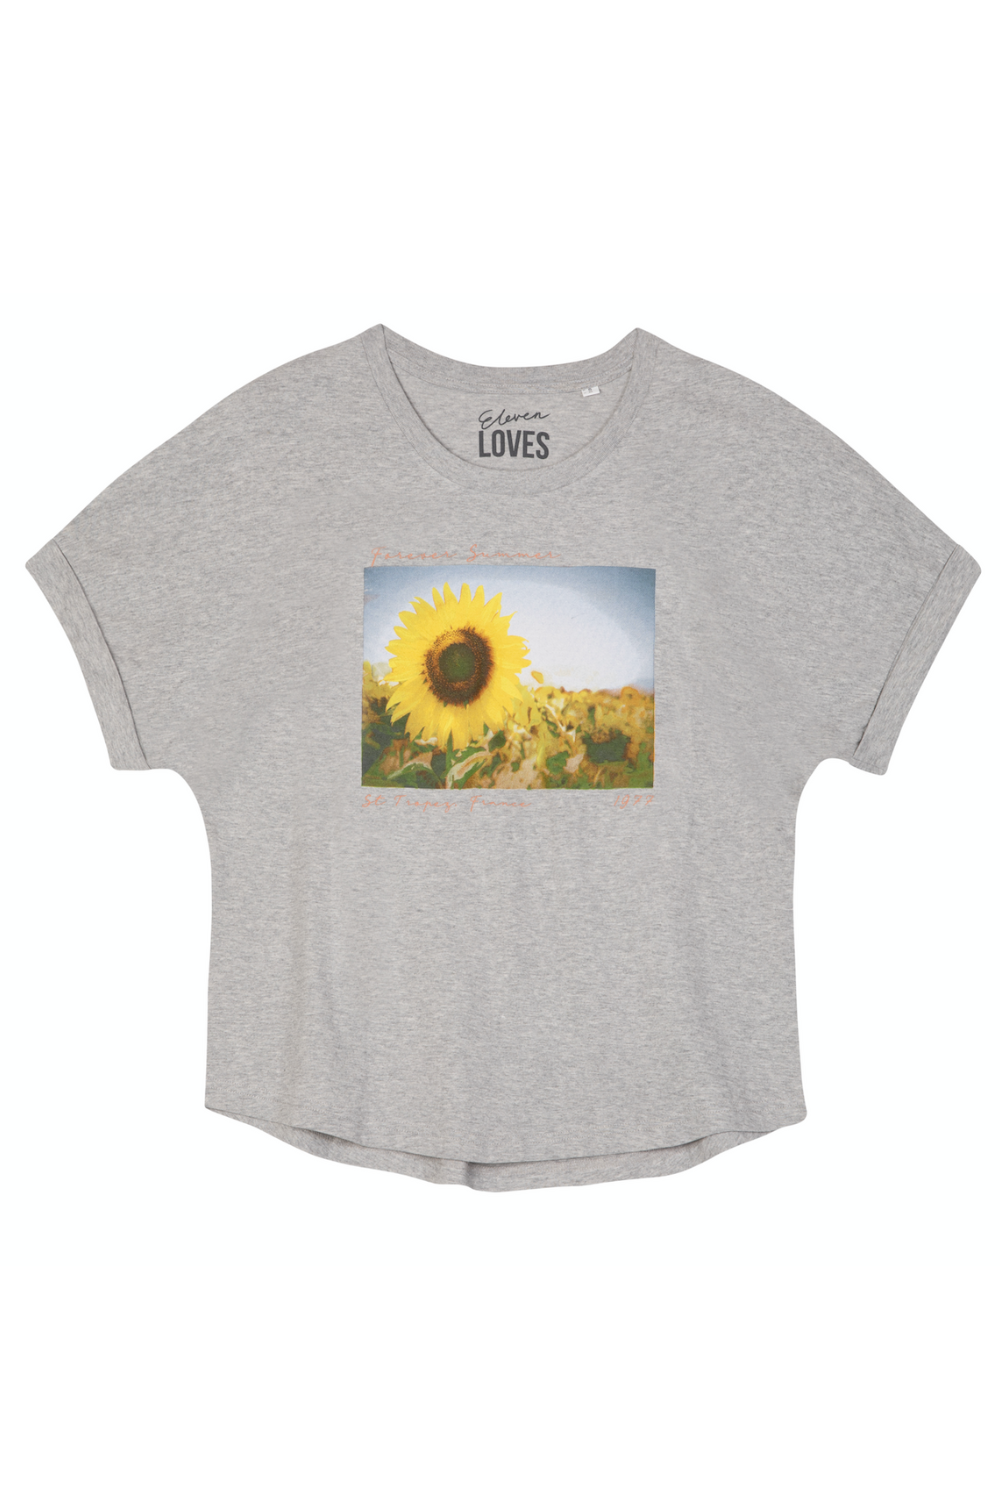 Forever summer T Shirt grey Eleven Loves elevenloves 11 Loves ellenloves sustainable